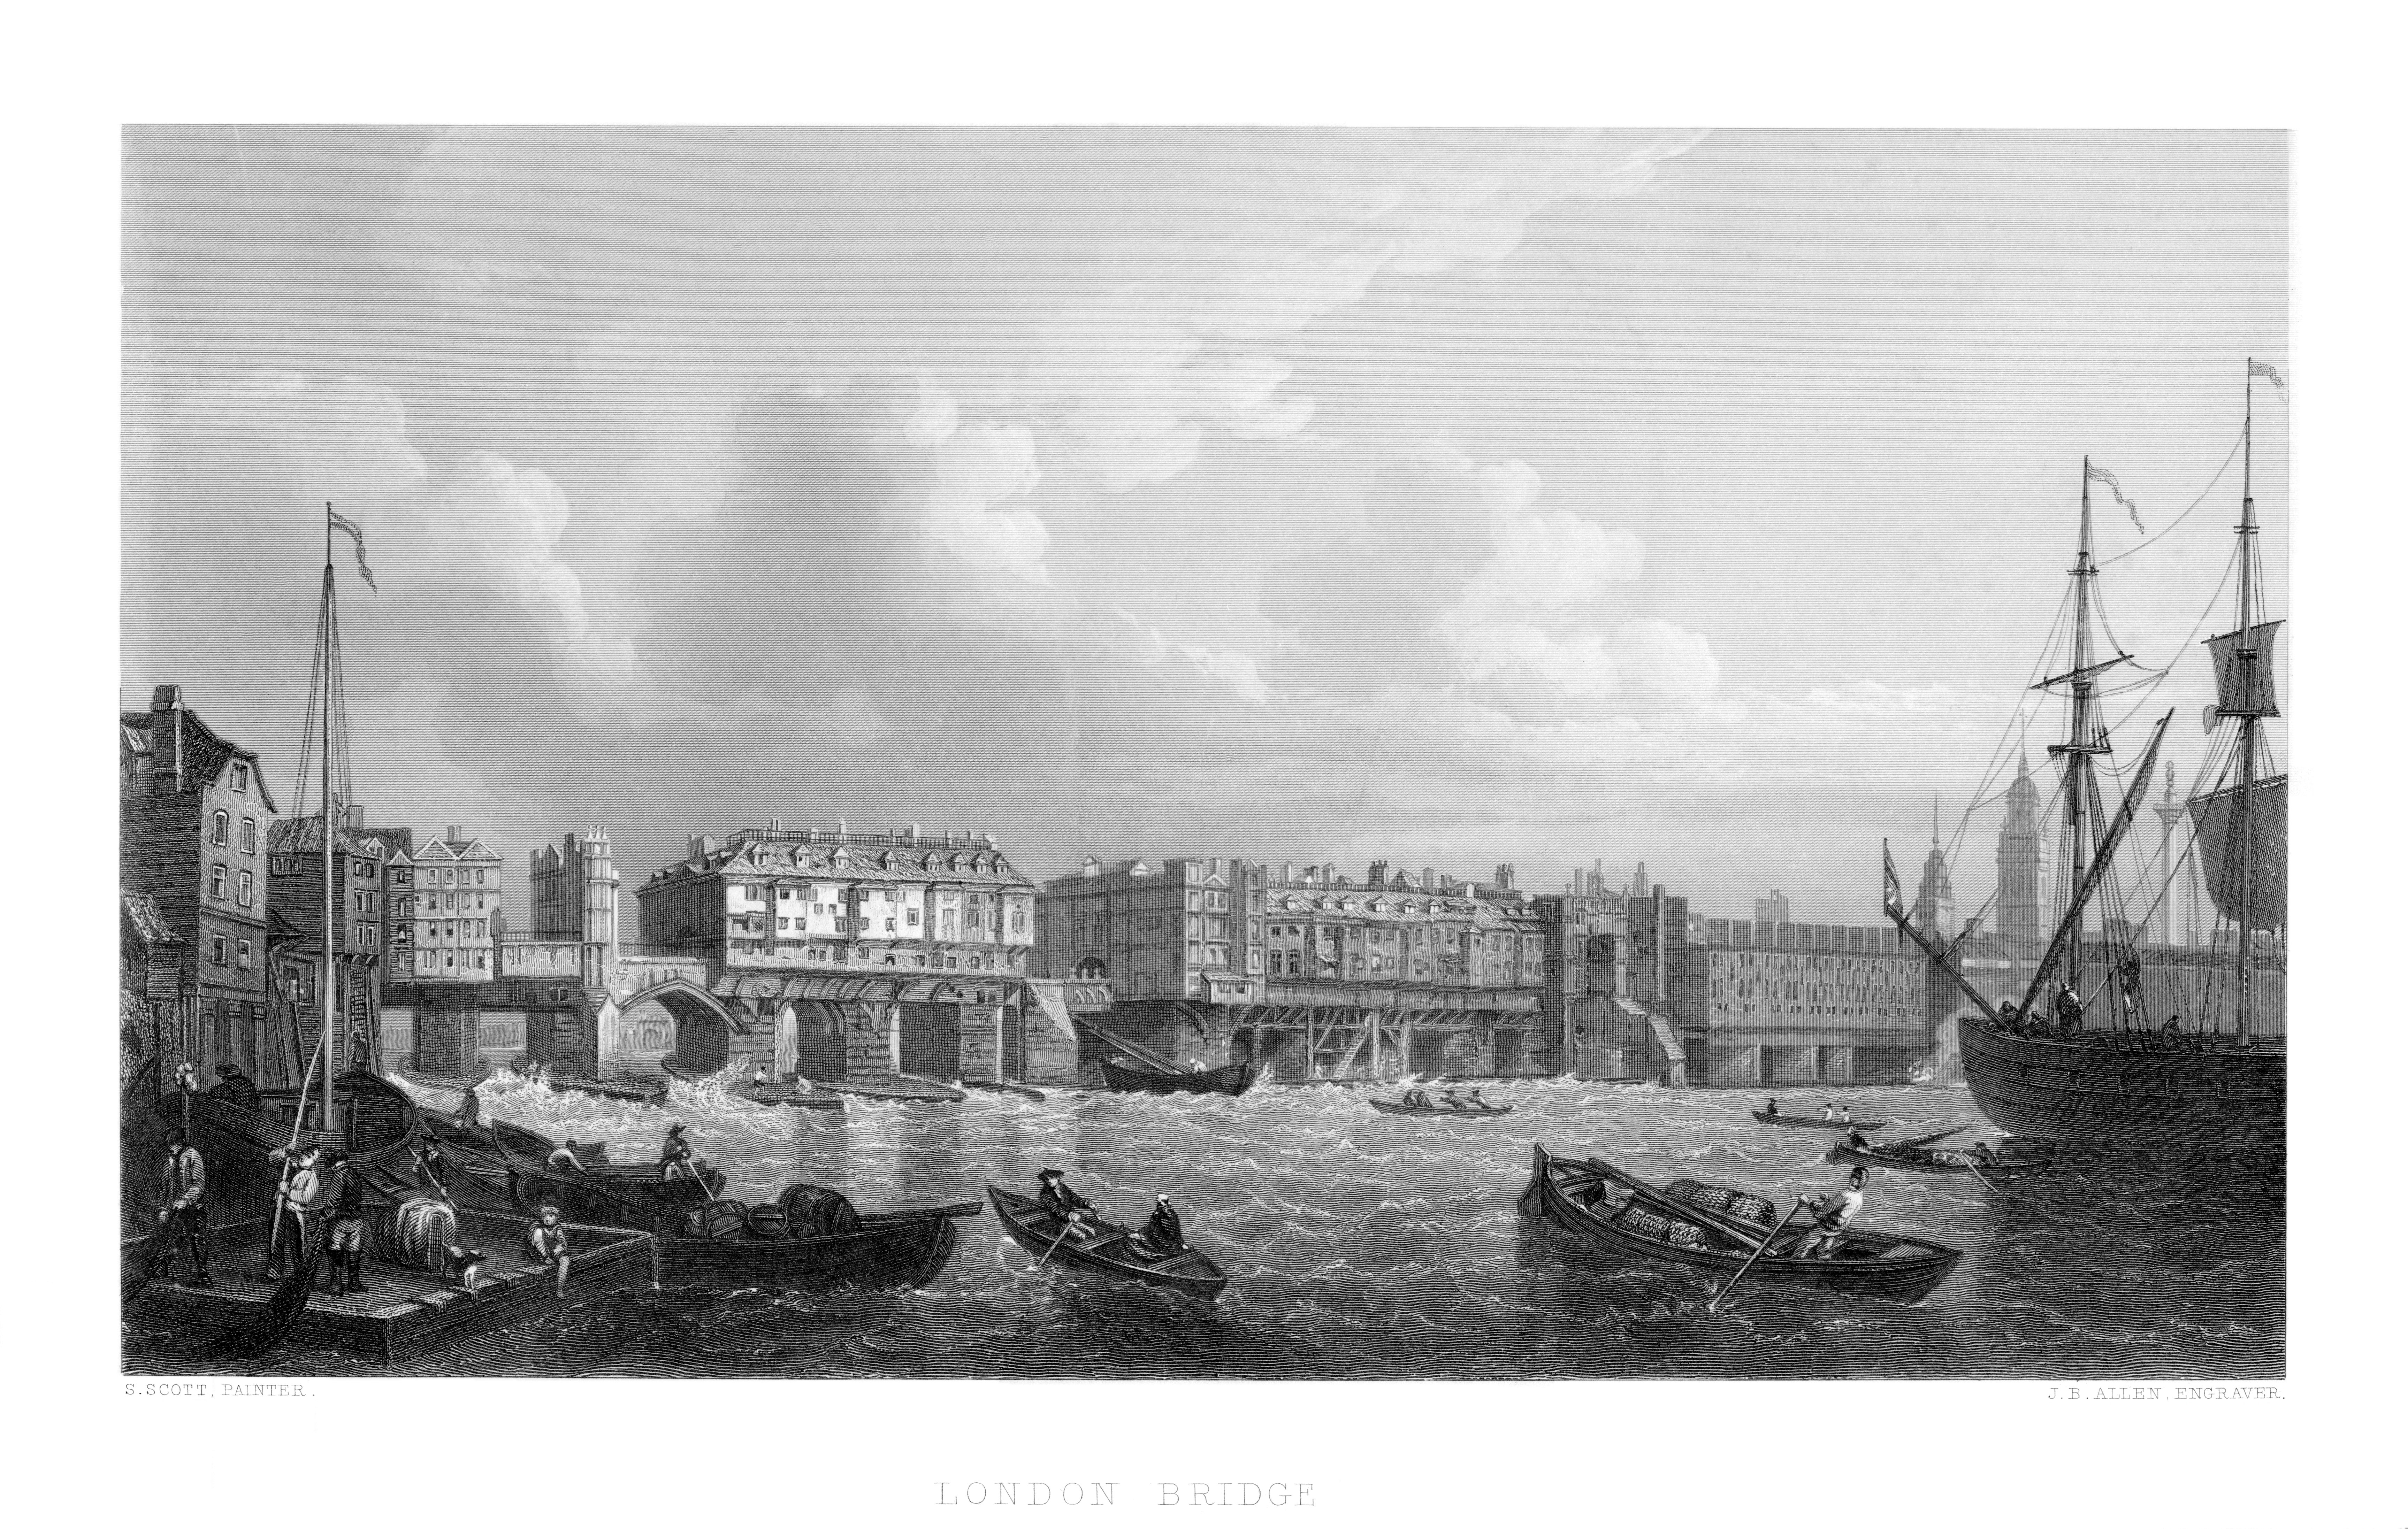 London London Bridge,prints,river view